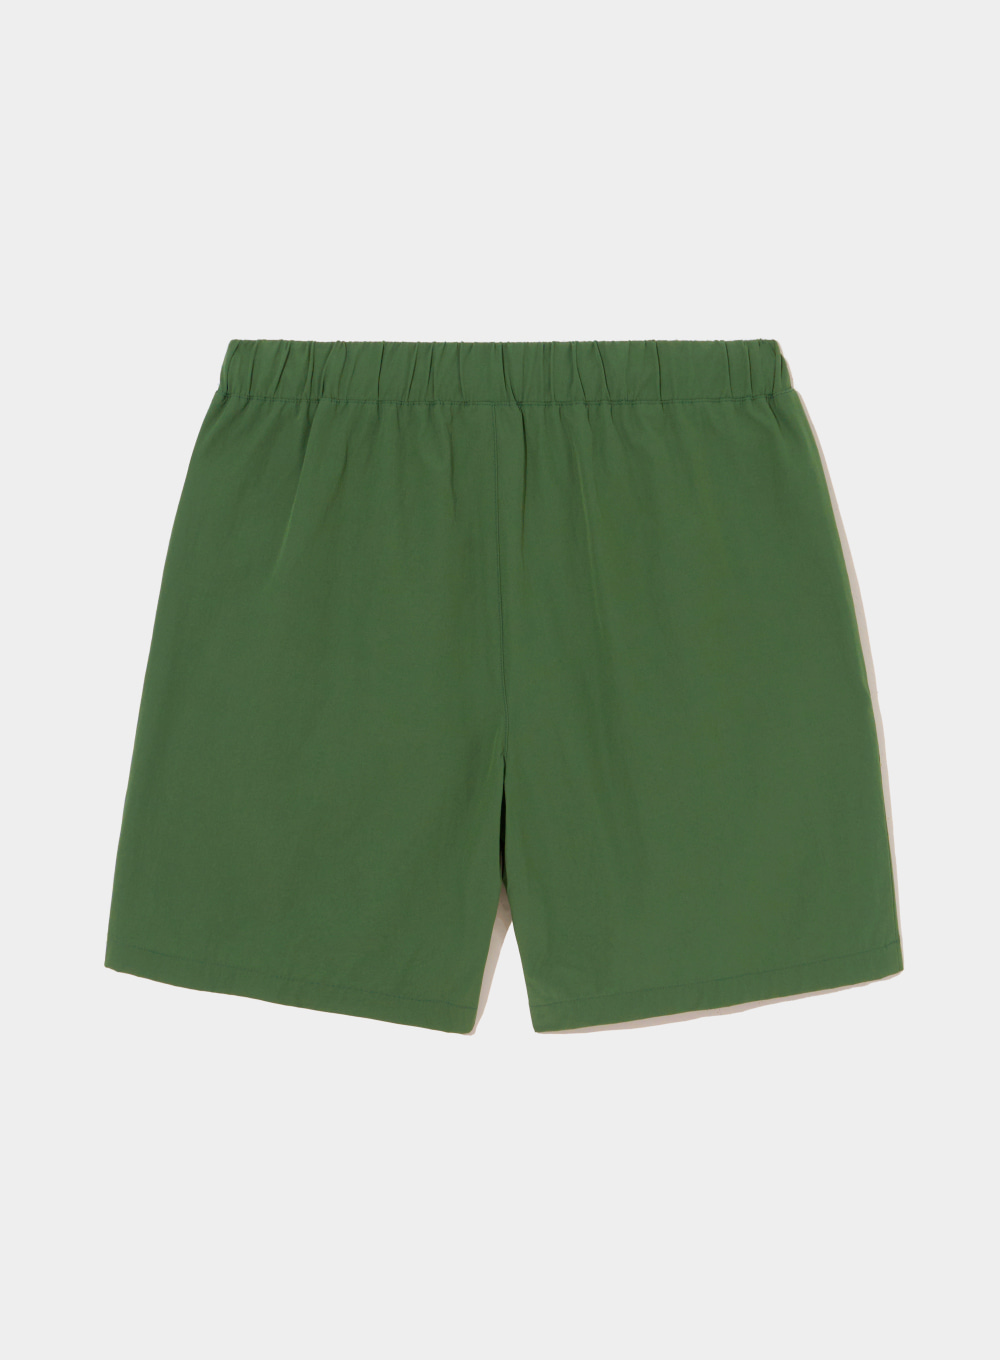 [2월 5일 예약배송][Satur X Diadora] Taping Line Half Pants - Deep Green